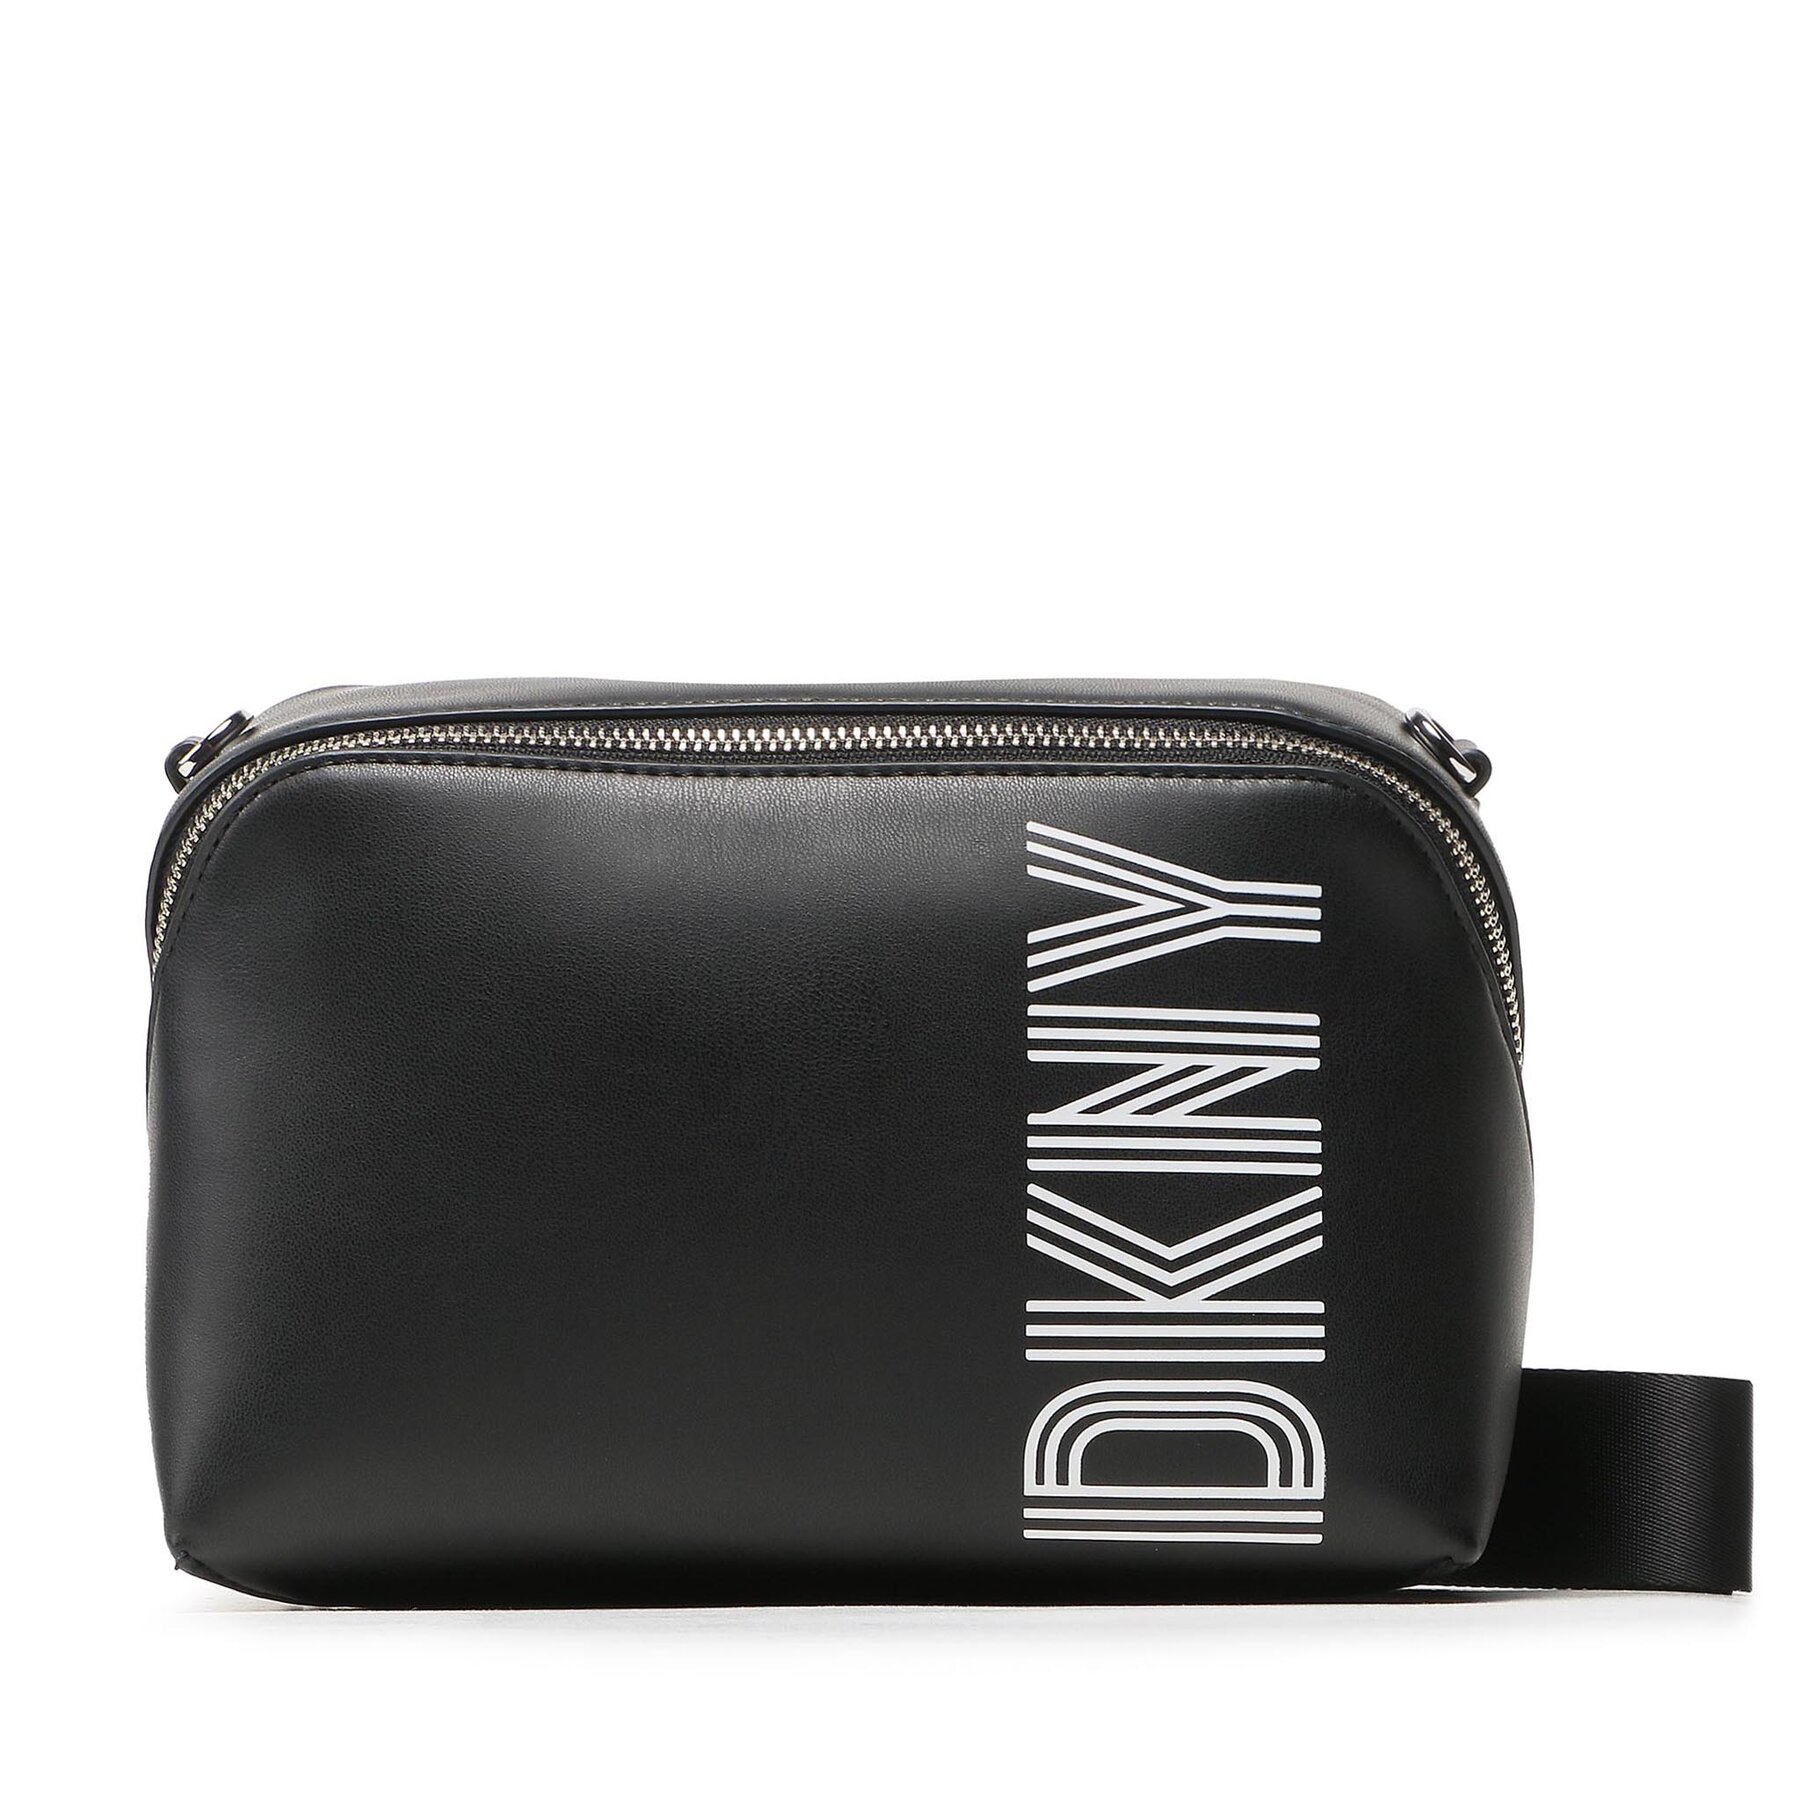 Ročna torba DKNY Tilly Camera Bag R31EZH47 Black/Silver BSV